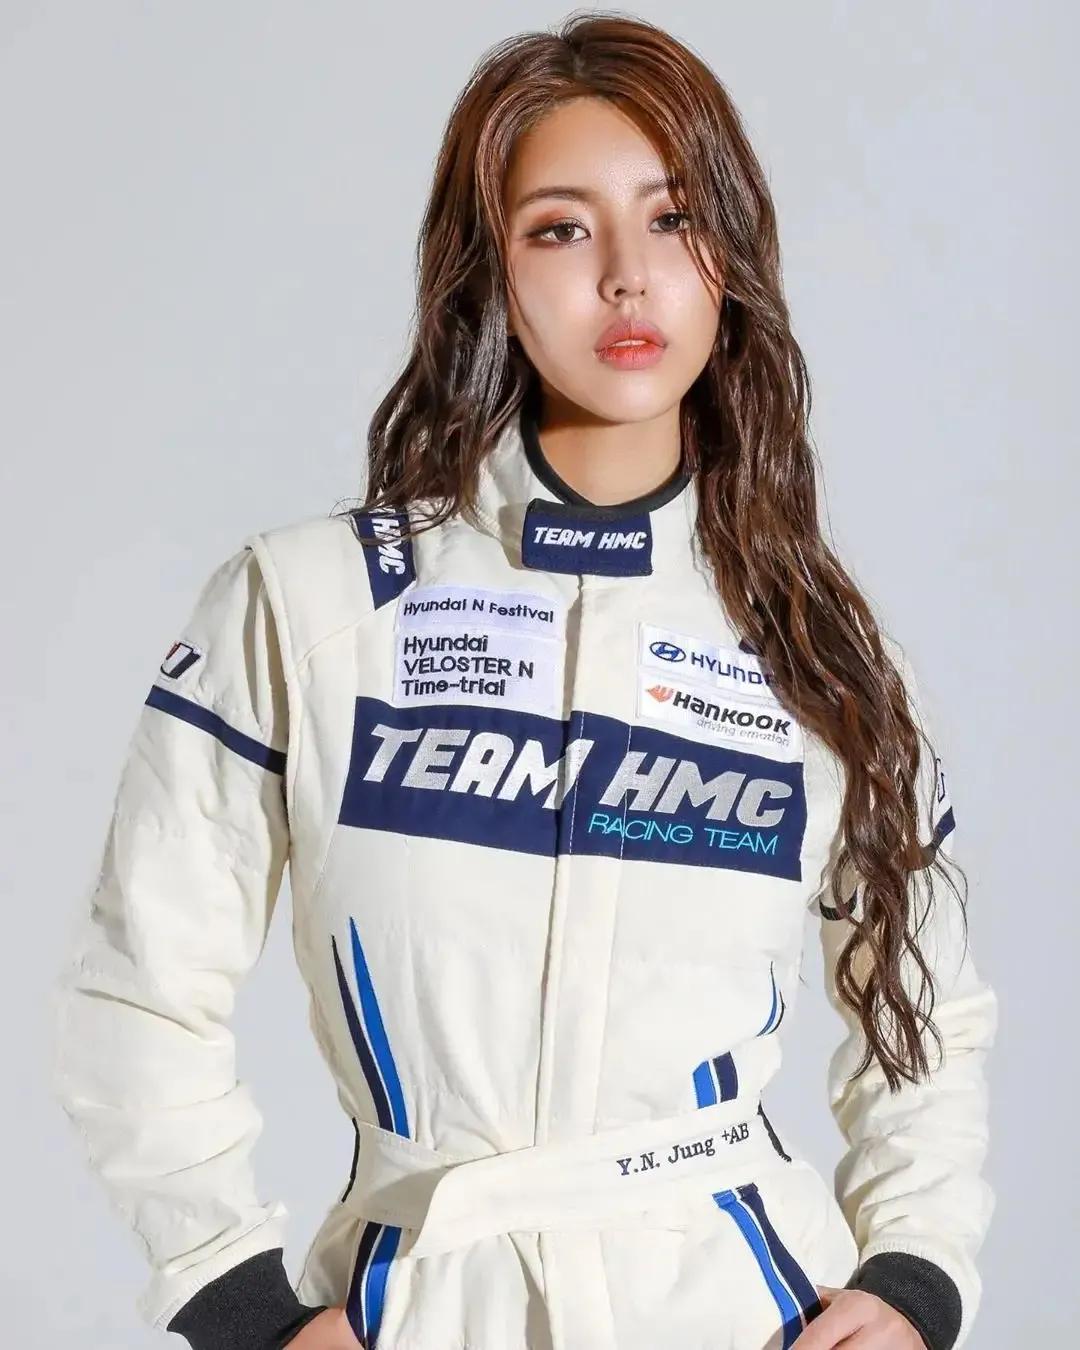 赛车手和美女(韩国美女赛车手，长相魅惑身材火辣，被称为“性感小野猫”)